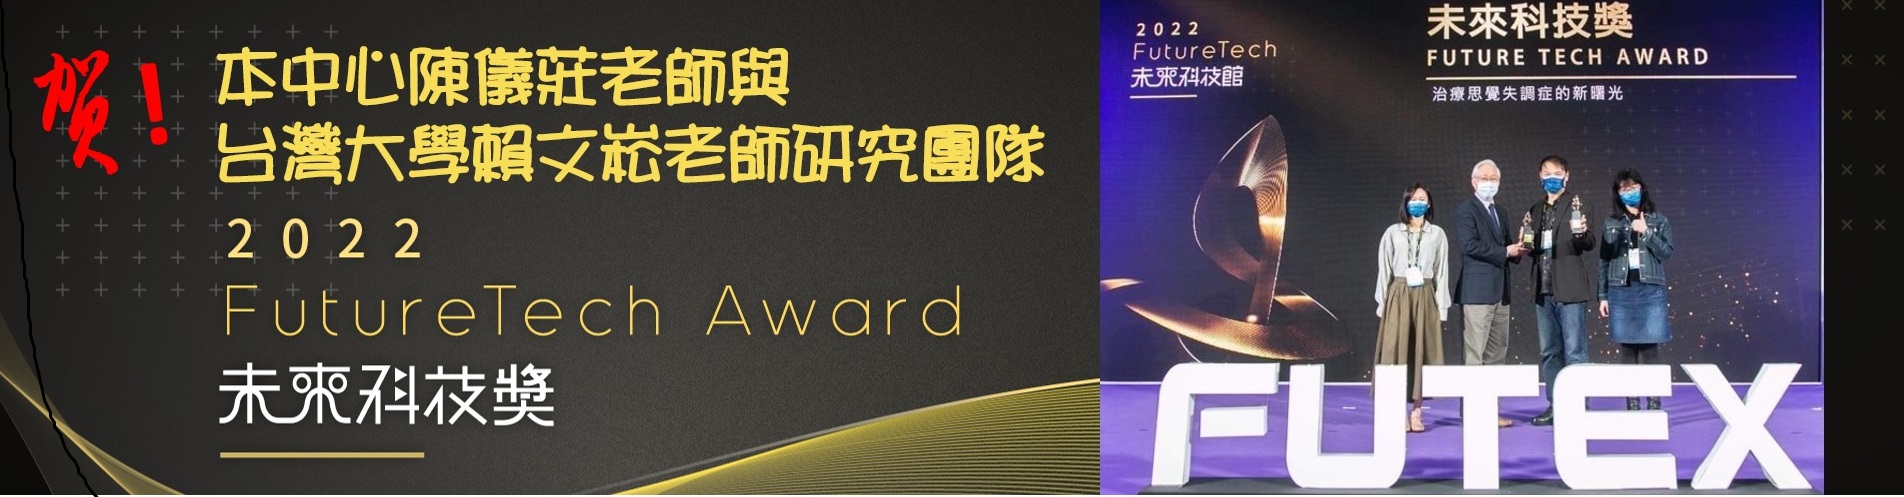 賀   陳儀莊老師與台灣大學賴文崧老師研究團隊 榮獲2022未來科技獎